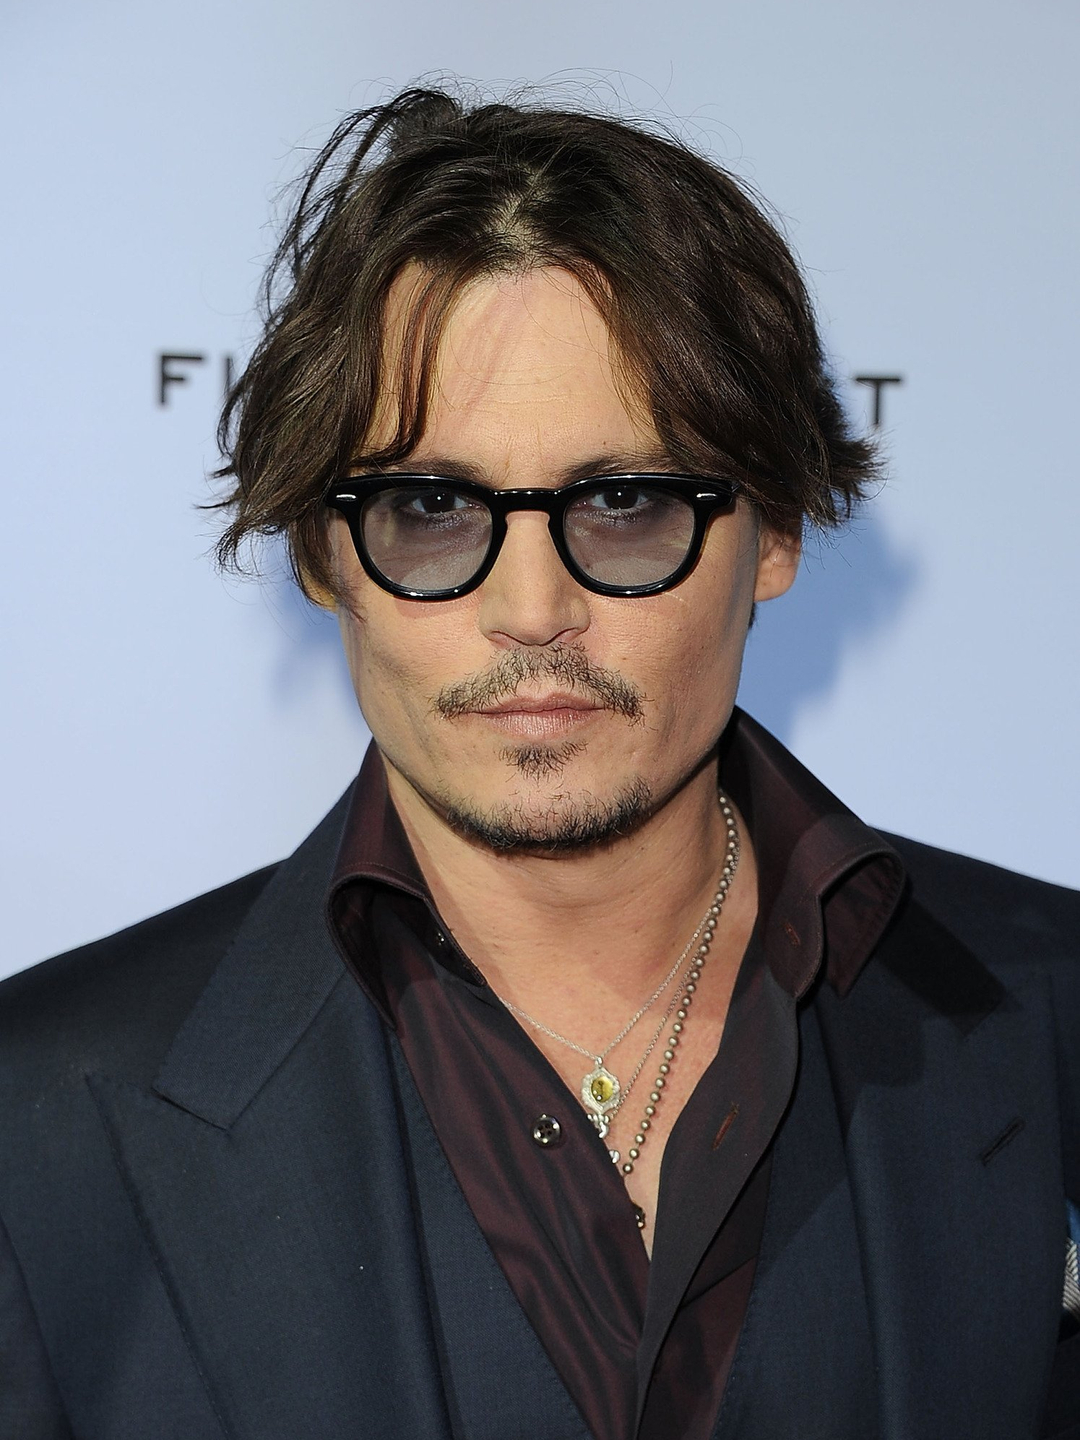 Johnny Depp dating history